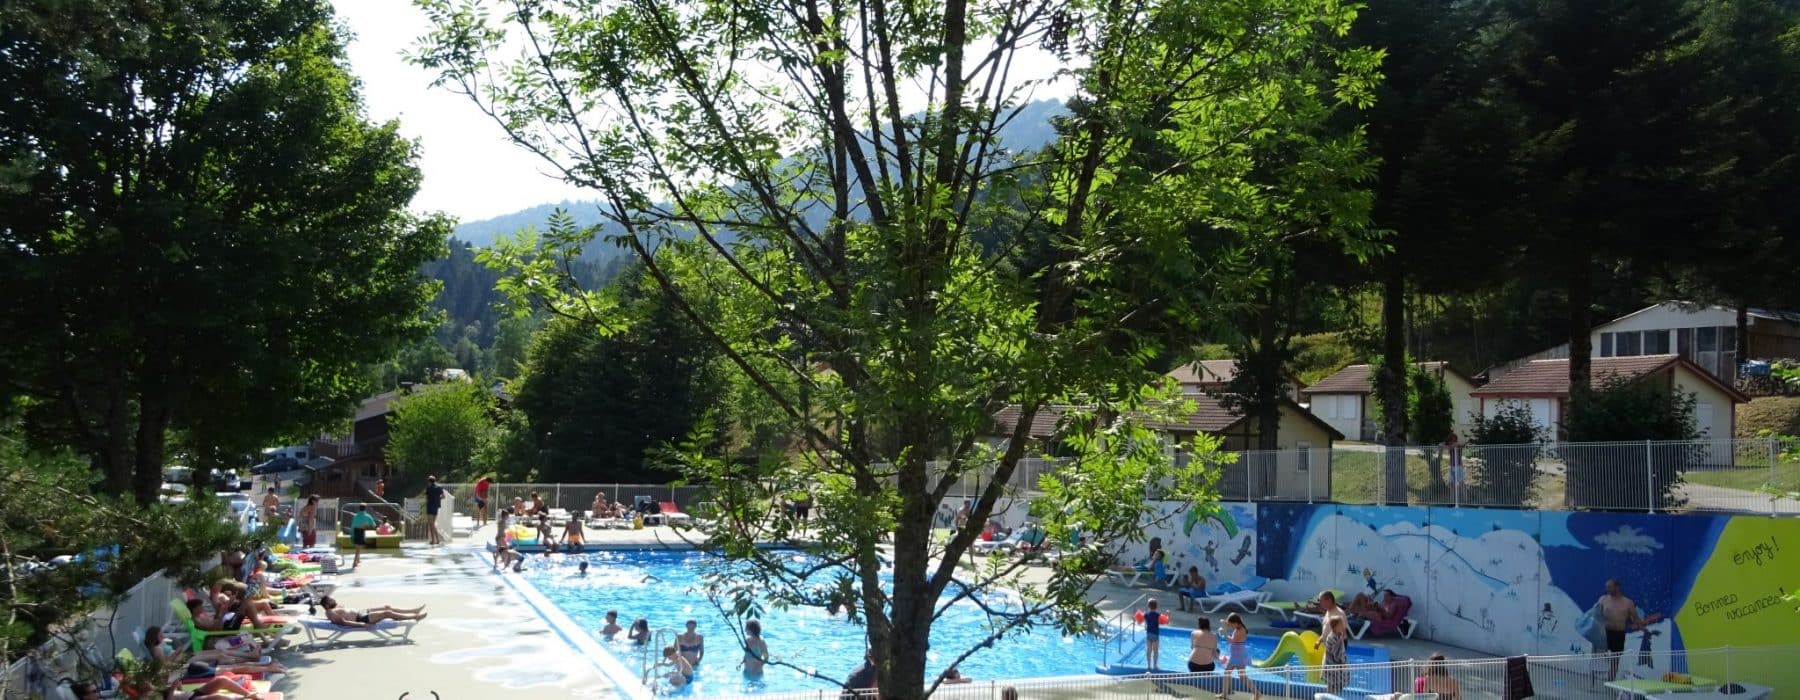 Vue d'ensemble de la piscine de notre camping dans les Vosges - Camping Belle Hutte